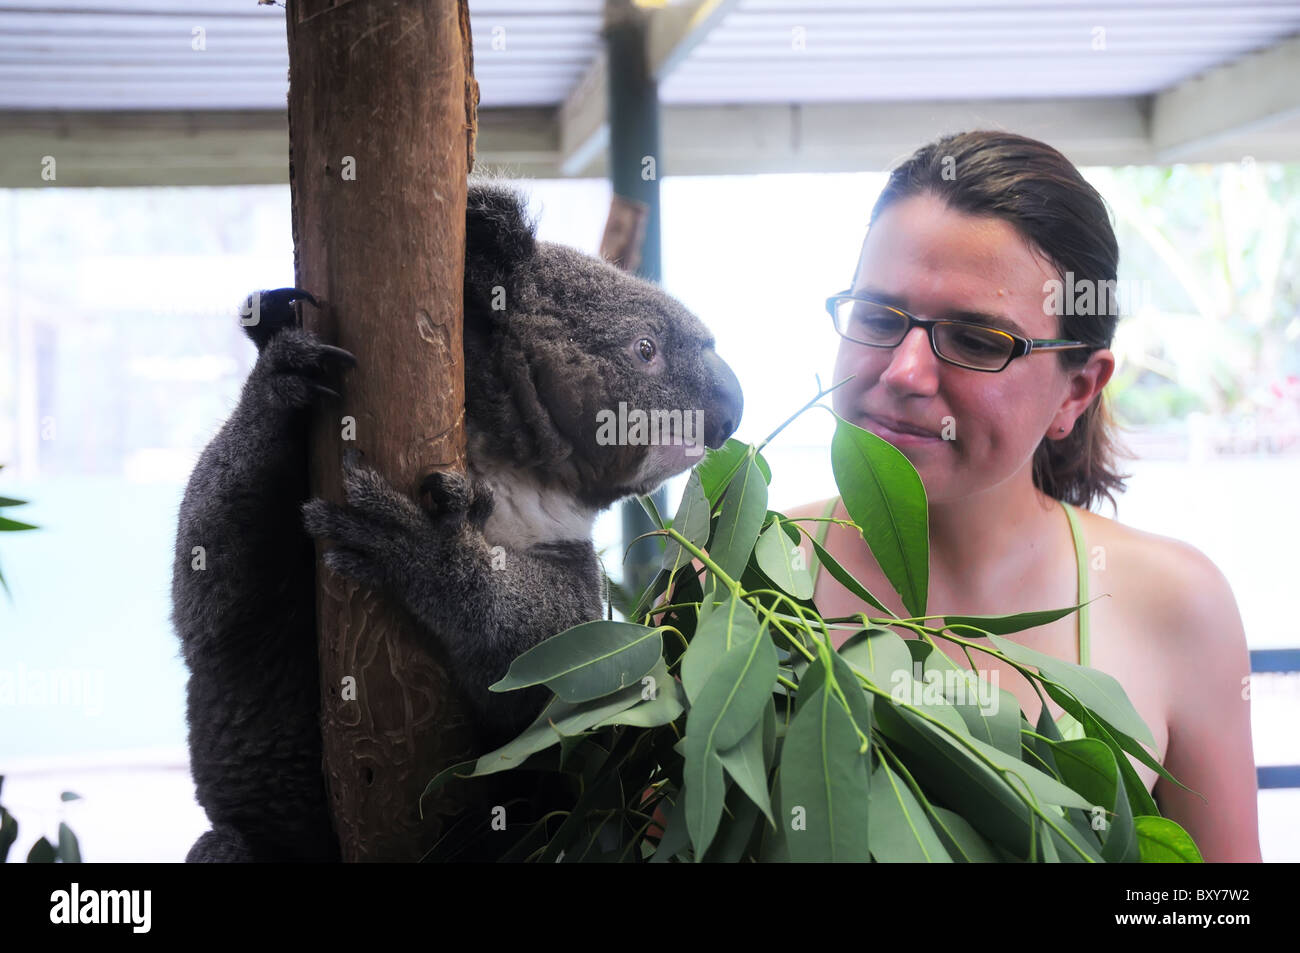 A young woman admiring a koala in an Austalian zoo Stock Photo